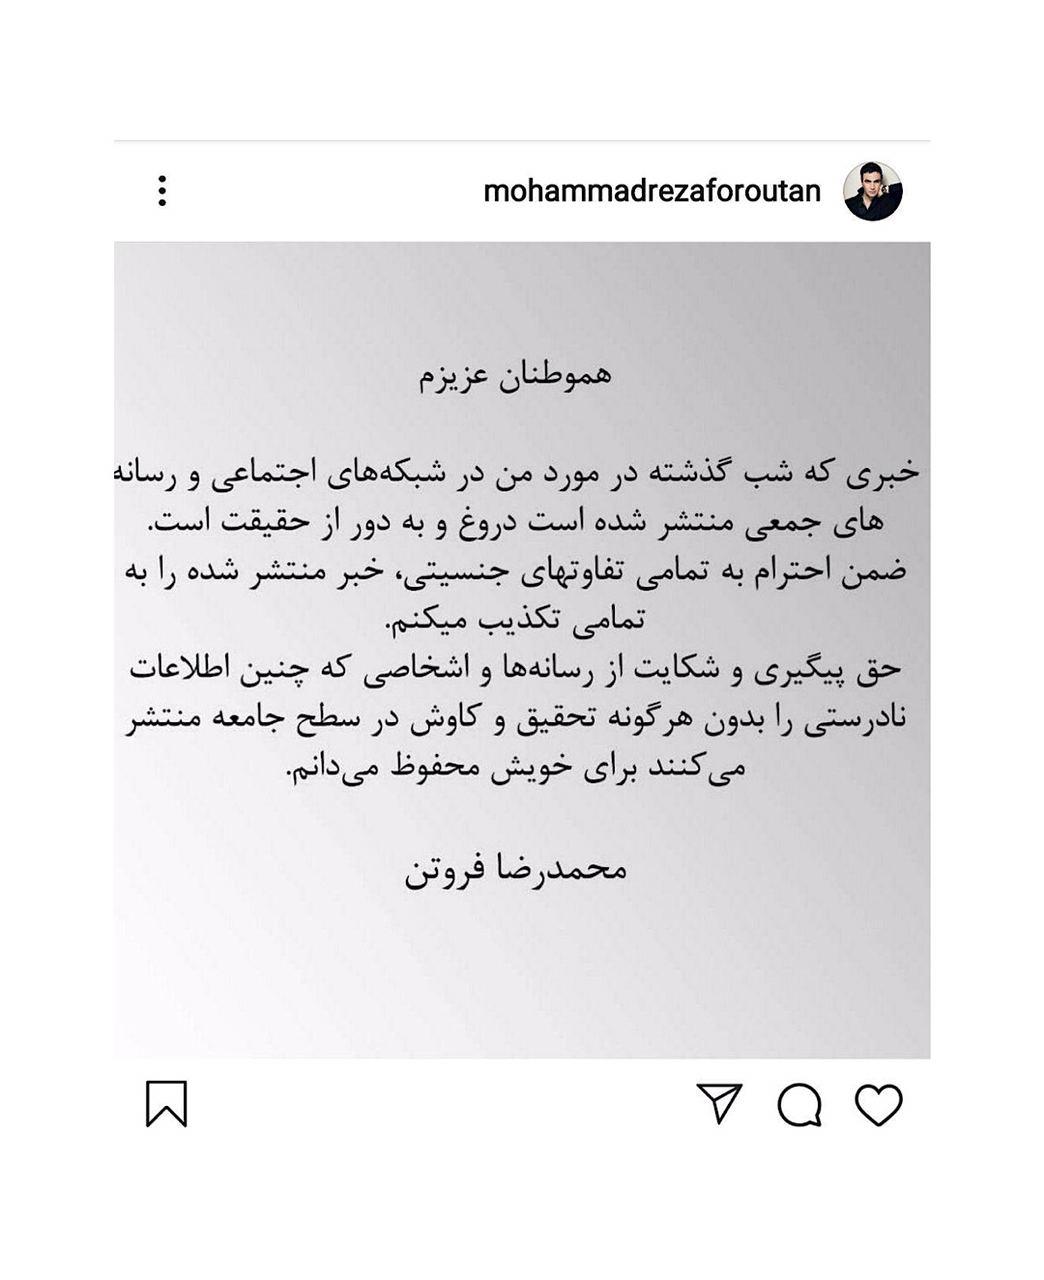 محمدرضا فروتن تغییر جنسیتش را تکذیب کرد